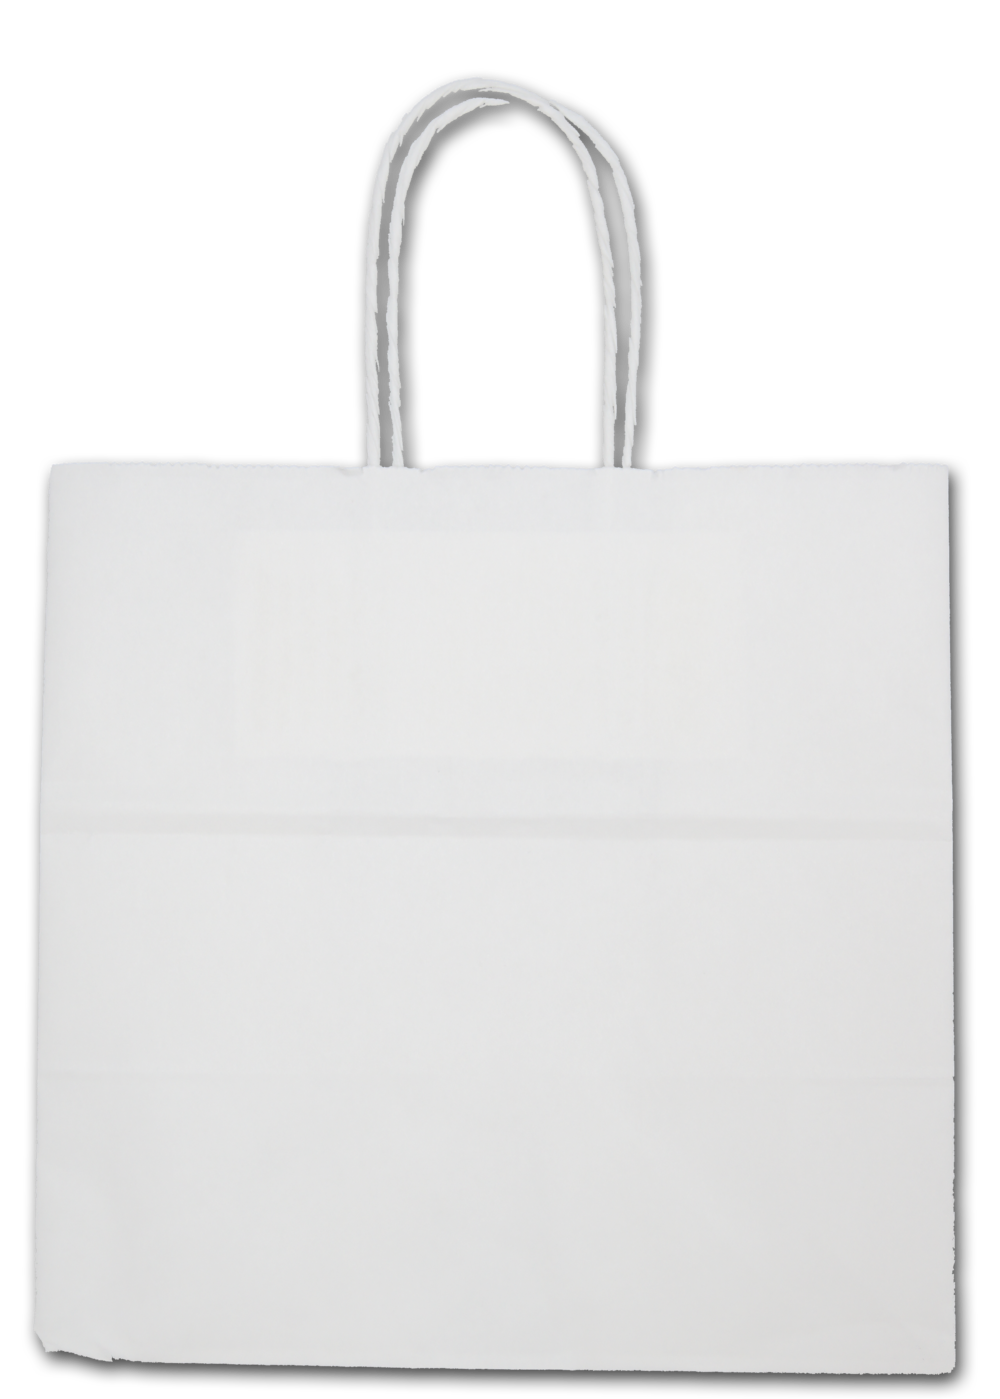 Download 490+ Transparent Plastic Bag Mockup Free Download Mockups ...